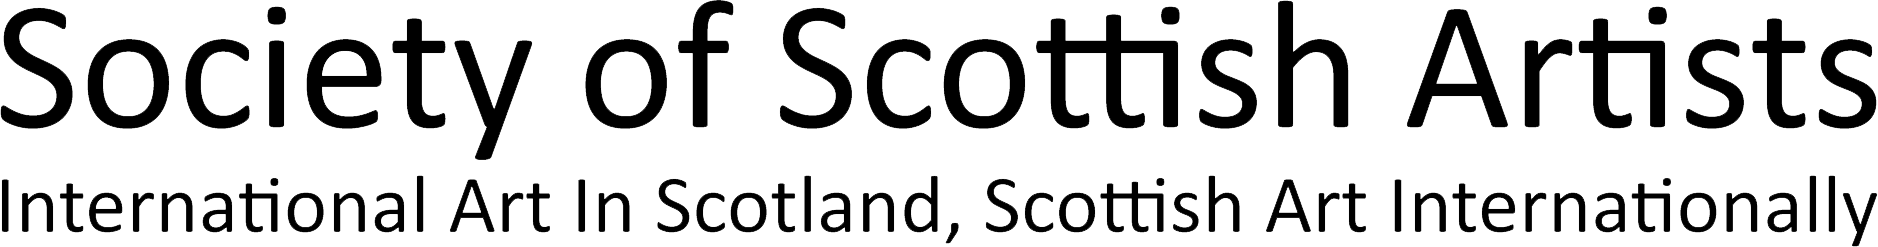 Society of Scottish Artists